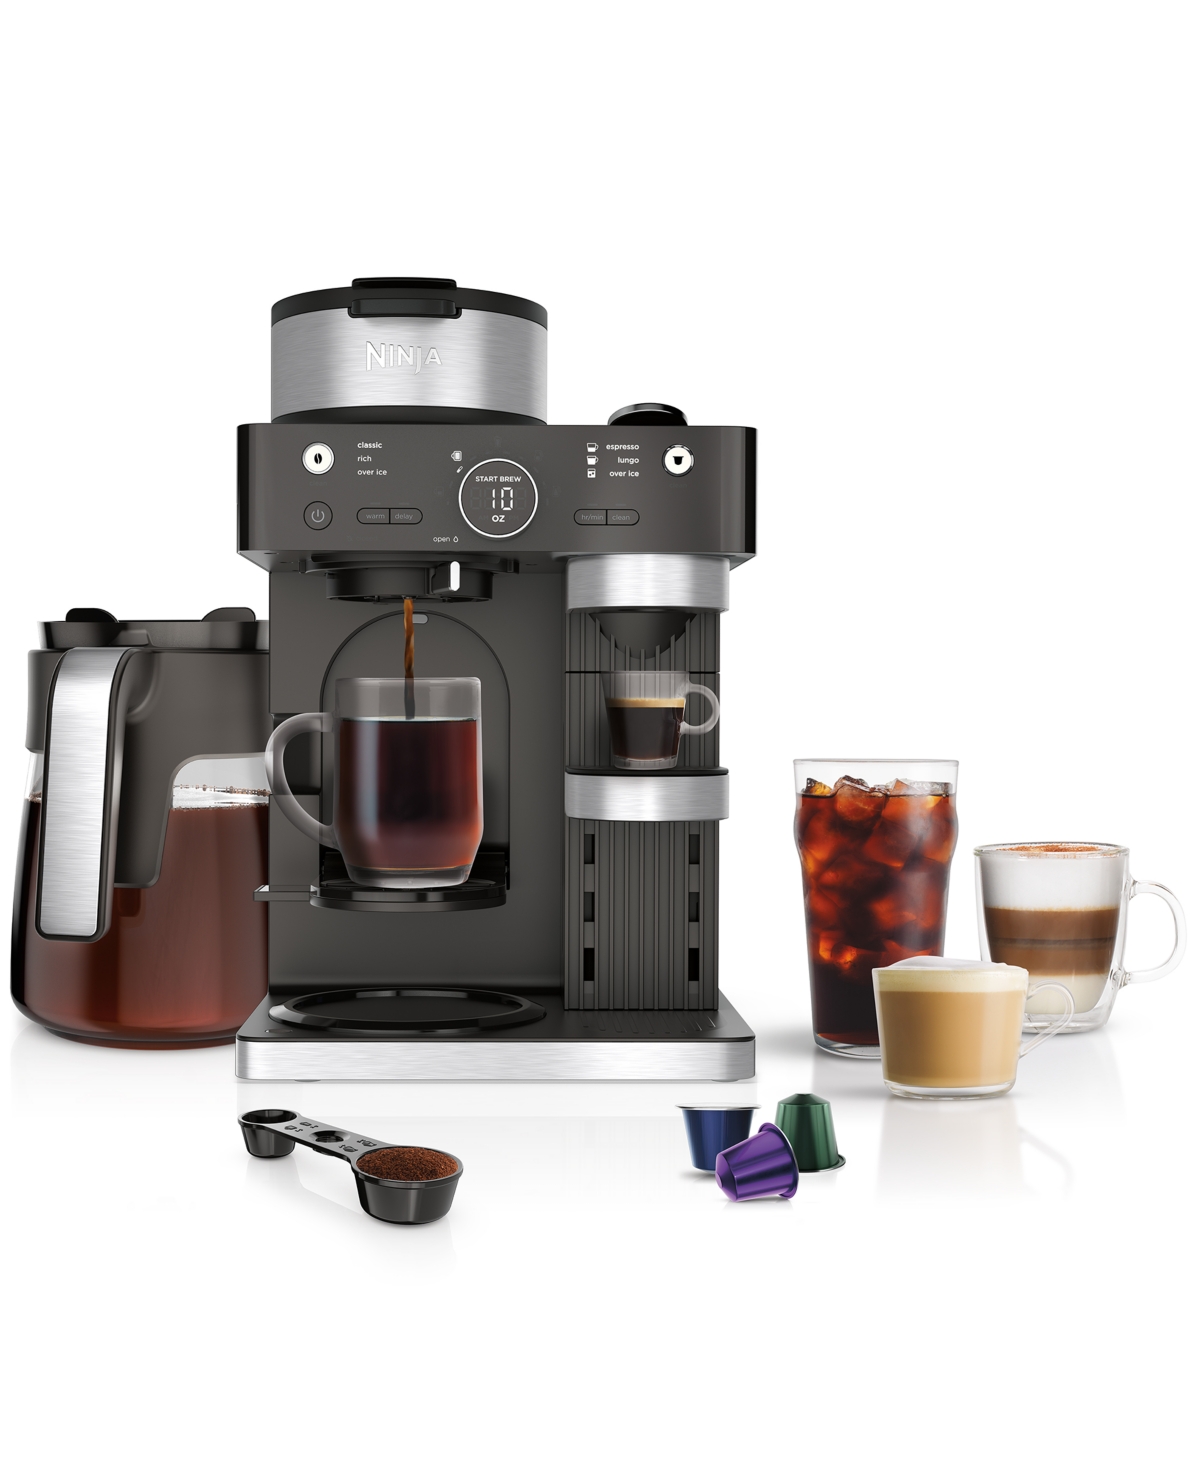 Shop Ninja Cfn601 Espresso & Coffee Barista System, Single-serve Coffee & Nespresso Capsule Compatible In Black